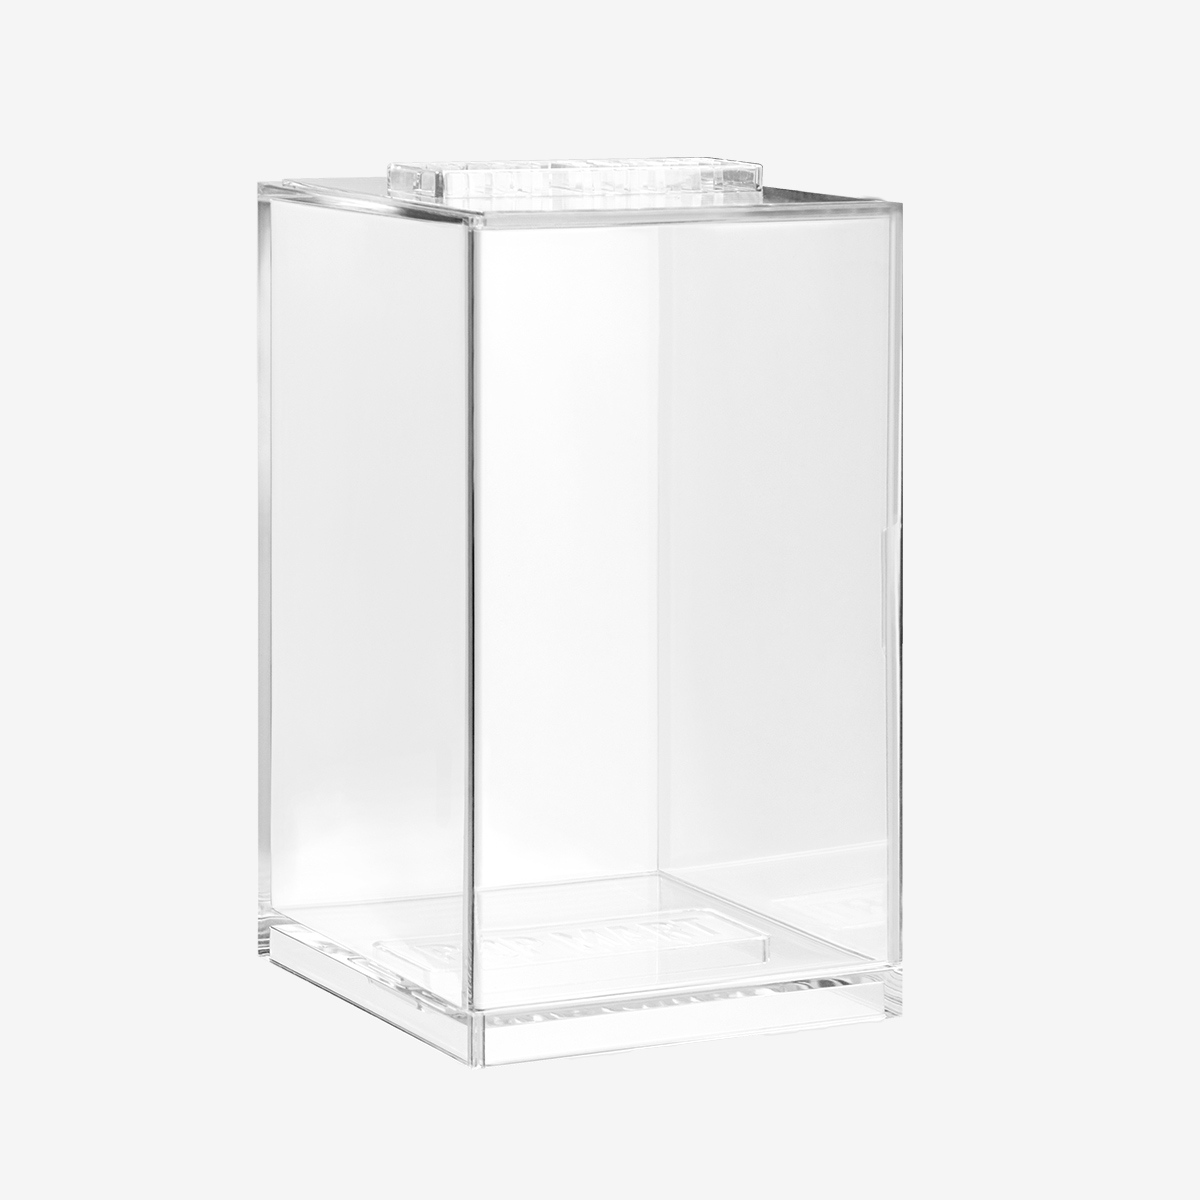 Boîte de rangement,Boîte à stores en acrylique transparent, vitrine de  figurines Pop Mart, Kits - Type White-L 17x30x24cm 3-Layer